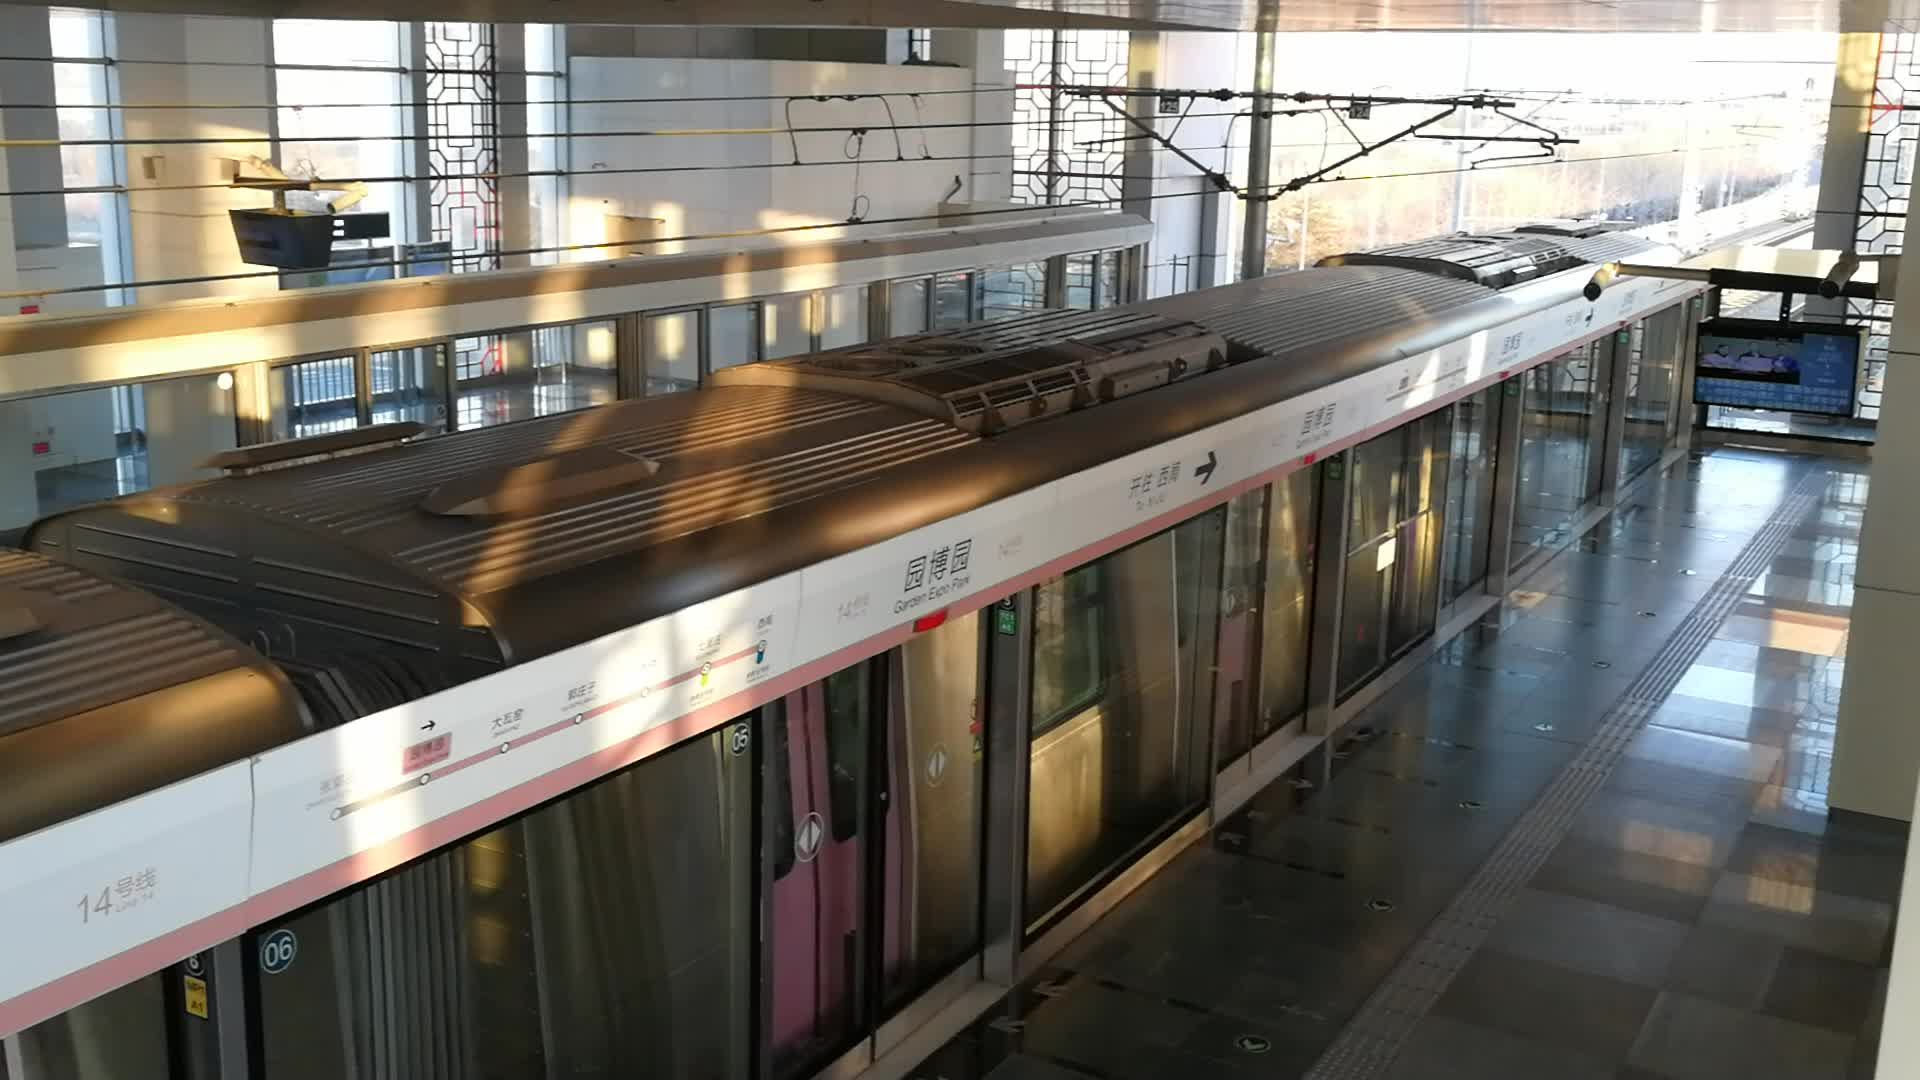 北京地铁14号线 列车图片